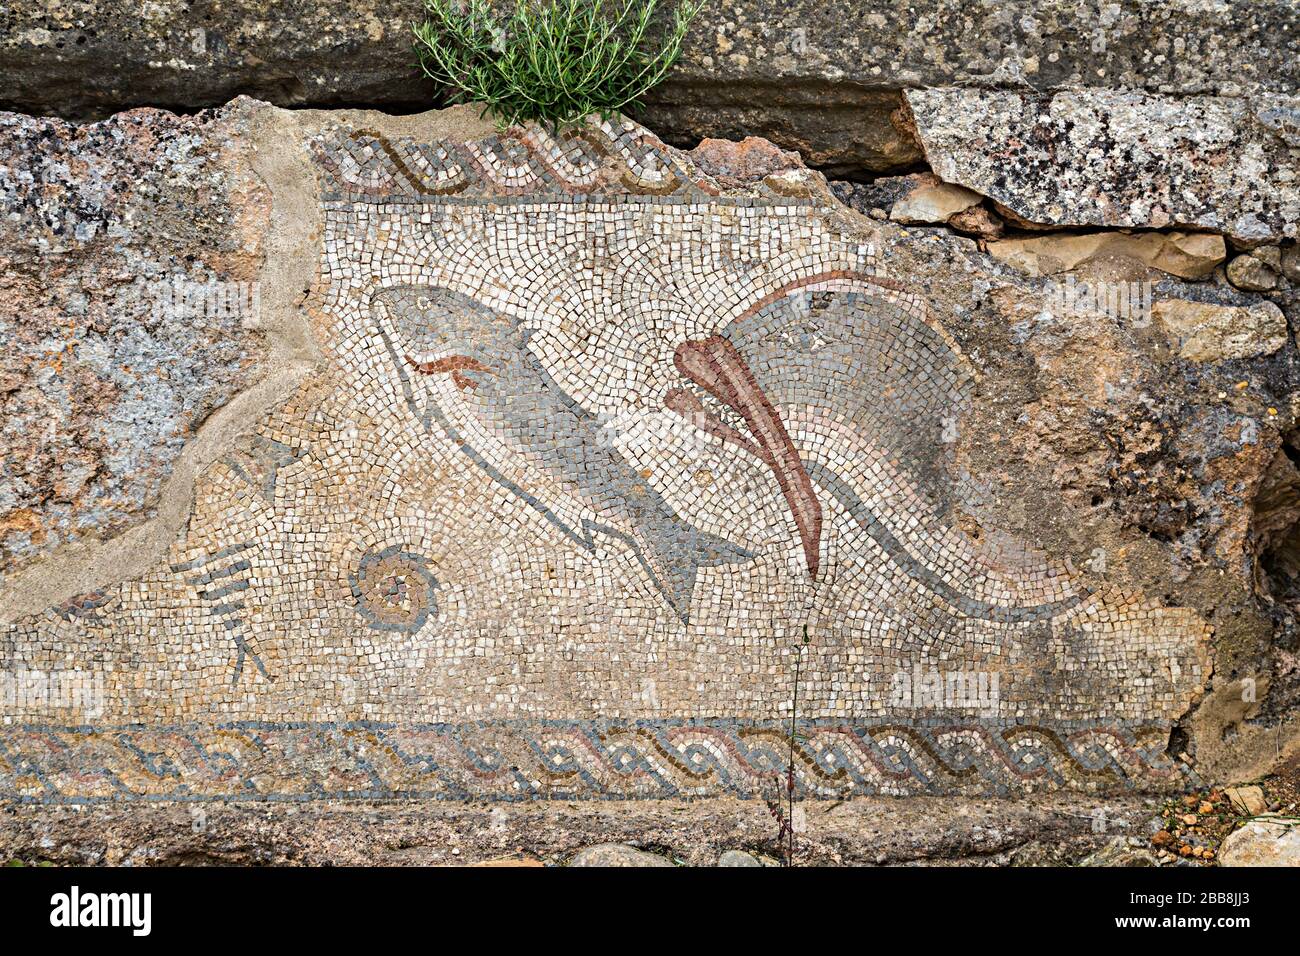 Dauphins et mosaïque de poissons dans les ruines de villas romaines, Milreu, Algarve, Portugal Banque D'Images